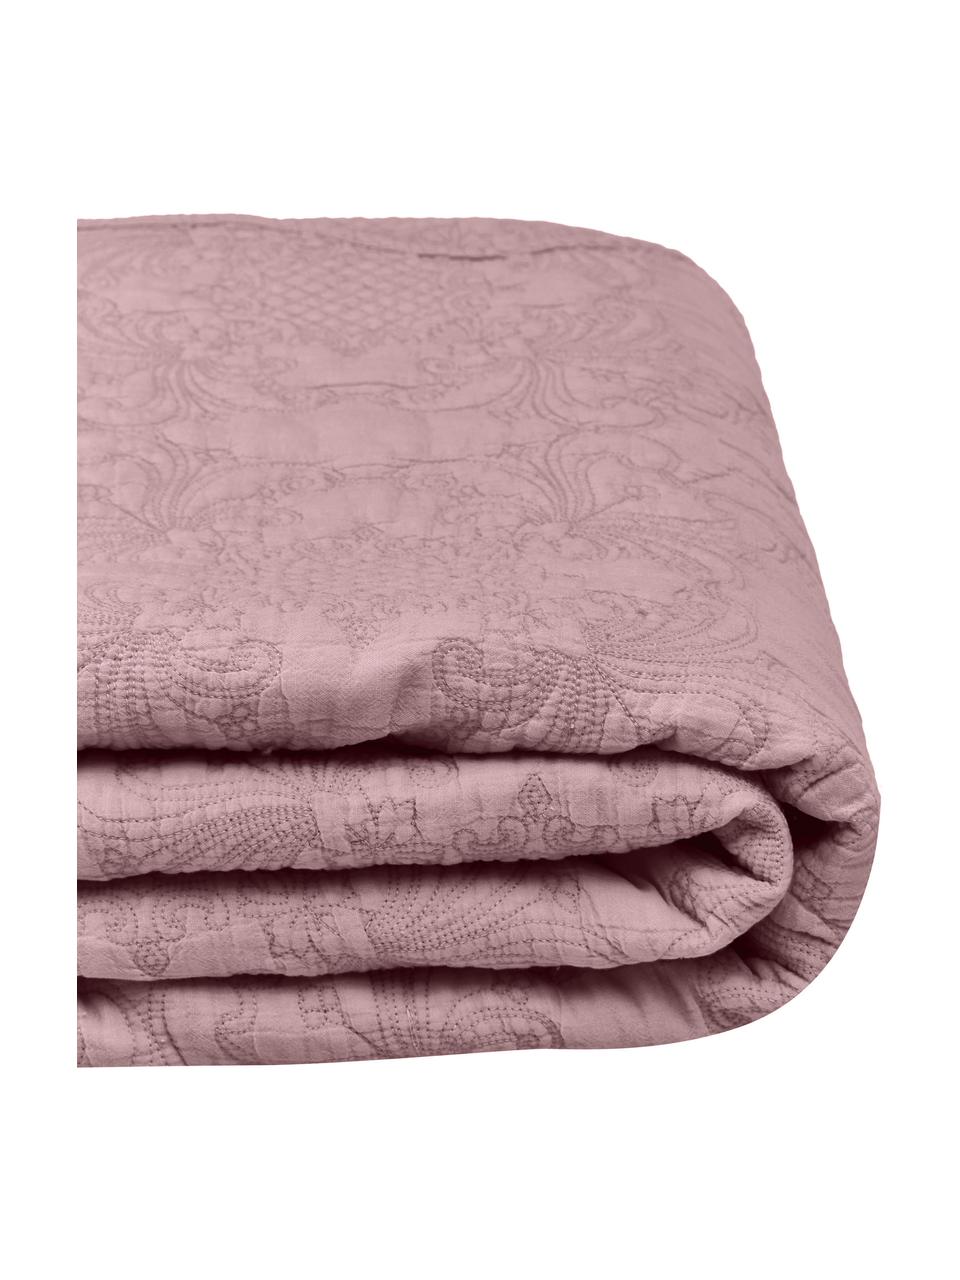 Bestickte Tagesdecke Madlon aus Baumwolle in Lila, Bezug: 100% Baumwolle, Lila, B 180 x L 250 cm (für Betten bis 140 x 200 cm)